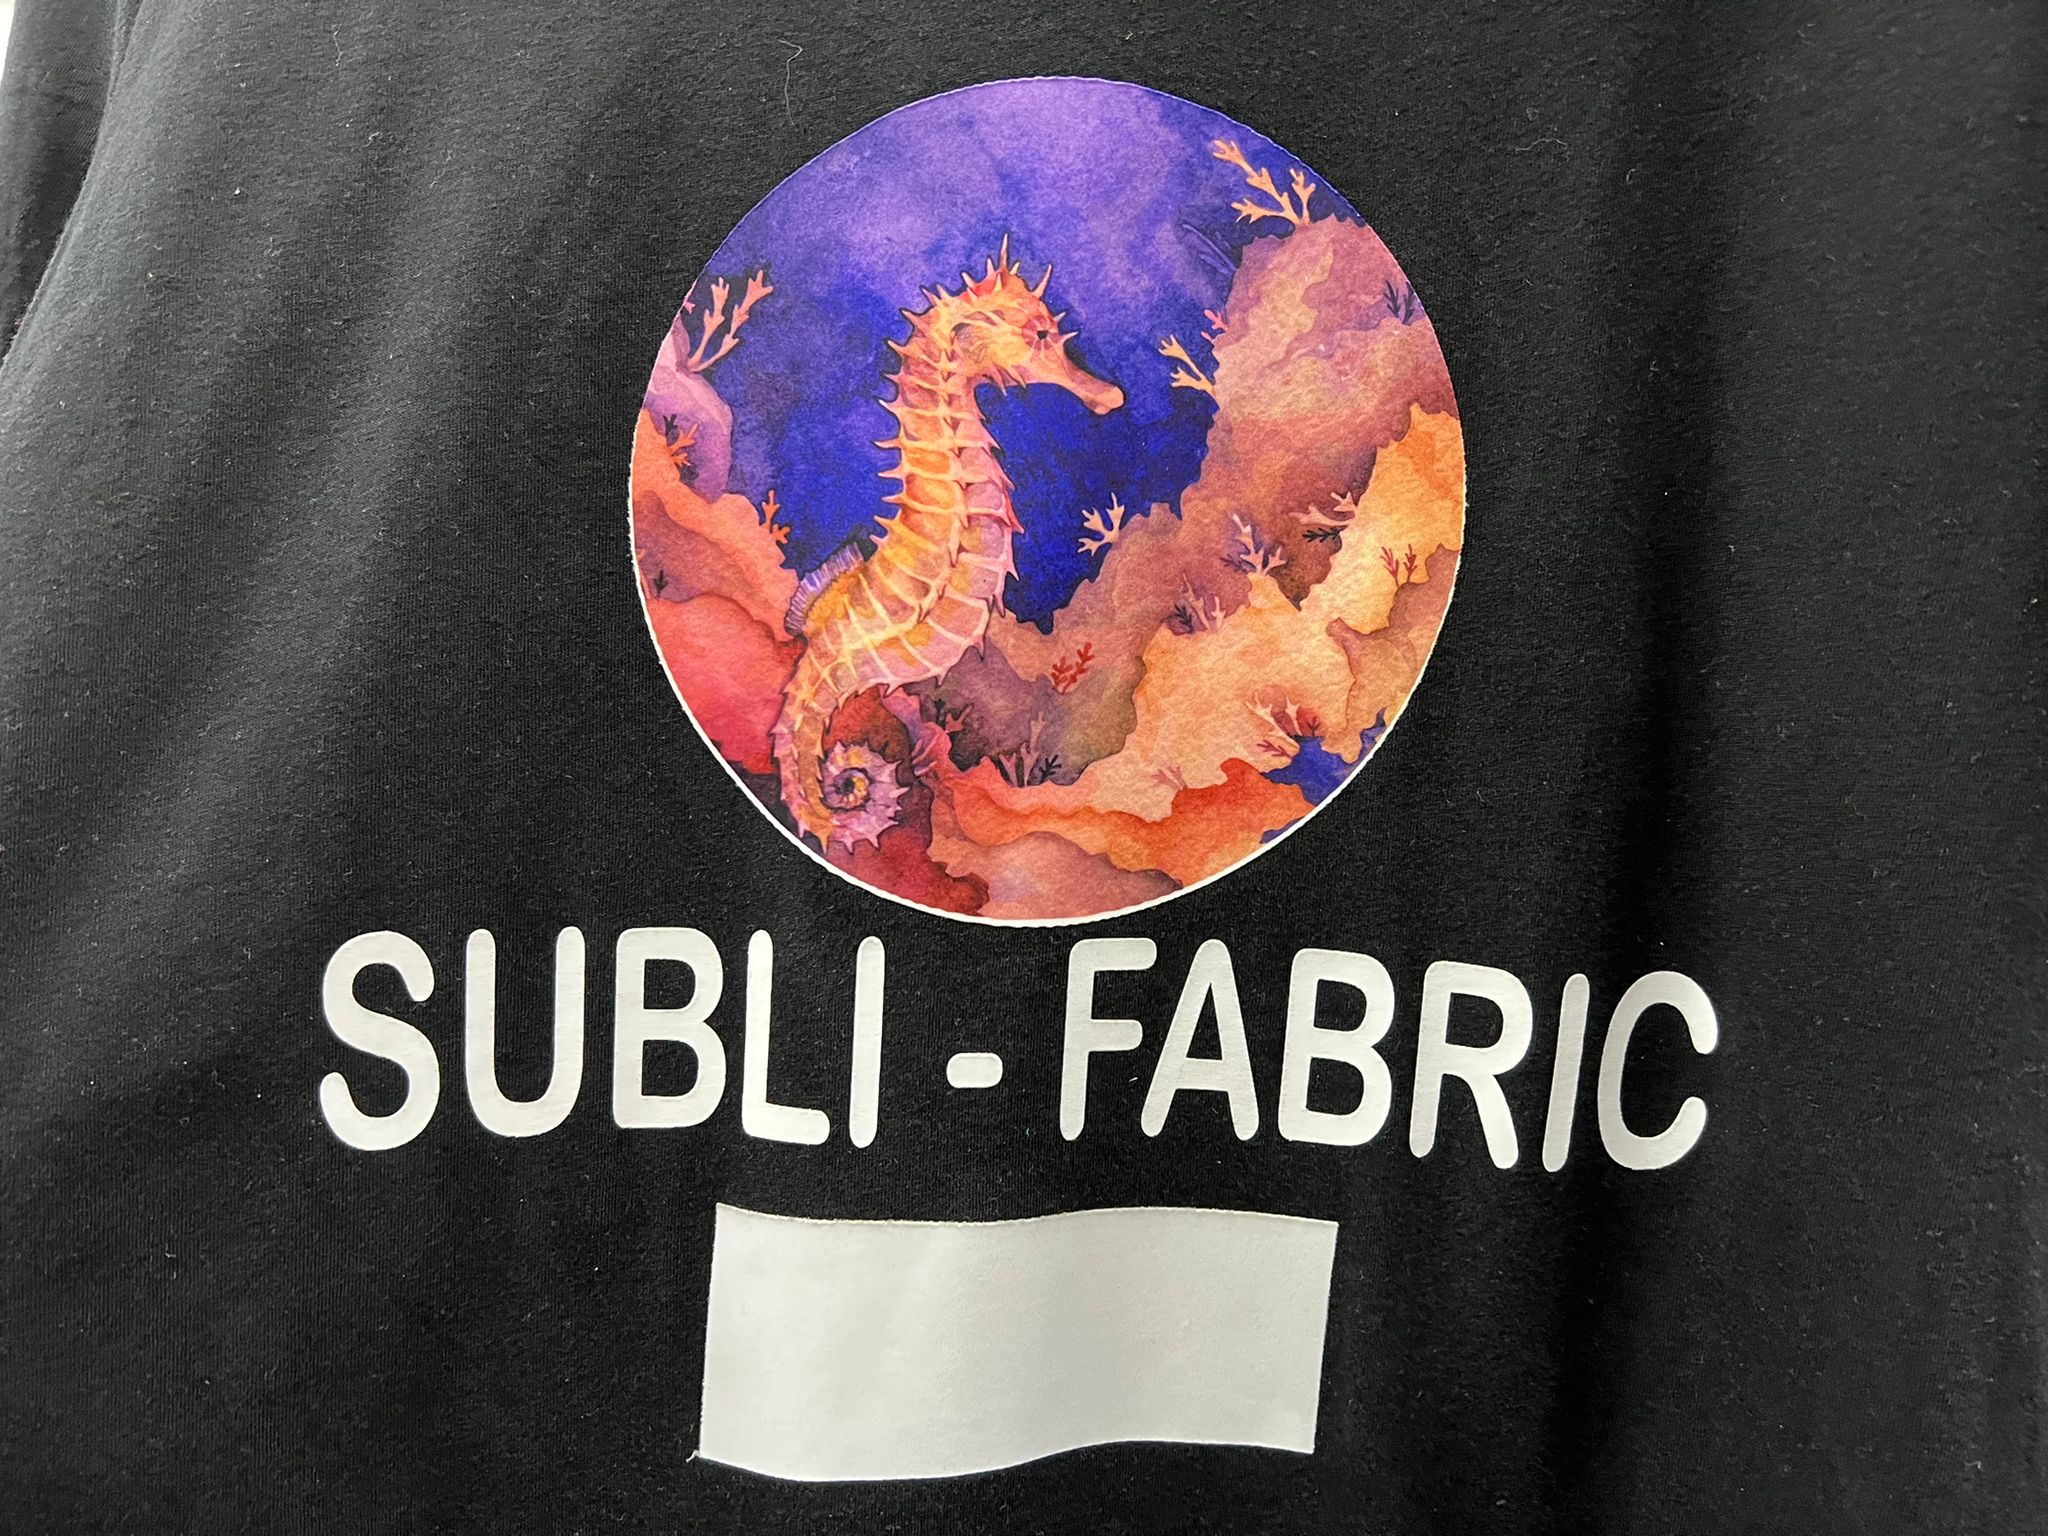 Subli Fabric Vinyl, Sublimation Fabric Vinyl For Dark Fabrics,5 yards